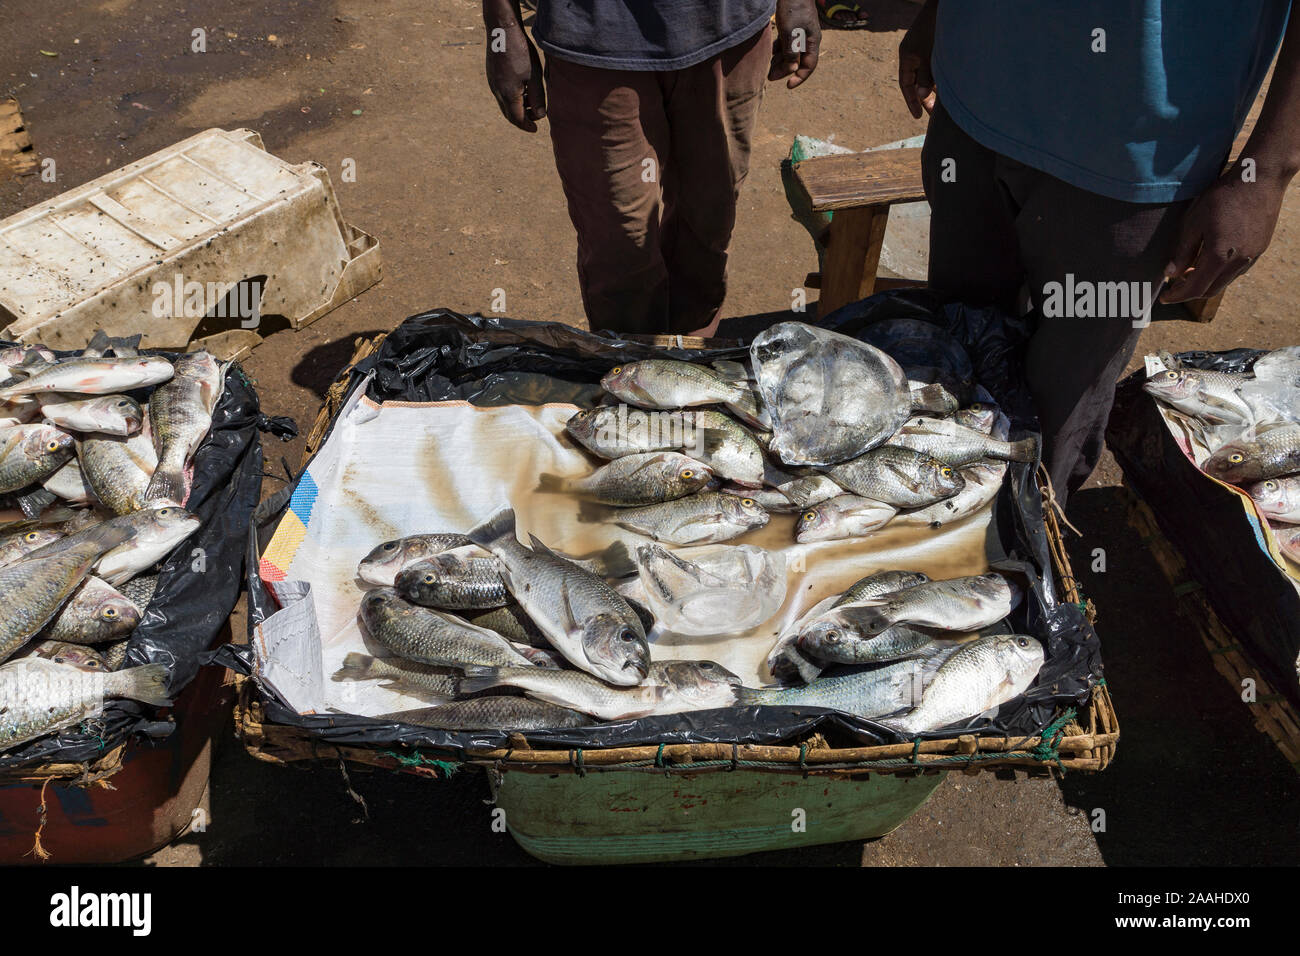 Cale dans le marché de Mzuzu, Malawi, vendant des poissons de chambo (Oreochromis lidole) capturés dans le lac Malawi Banque D'Images